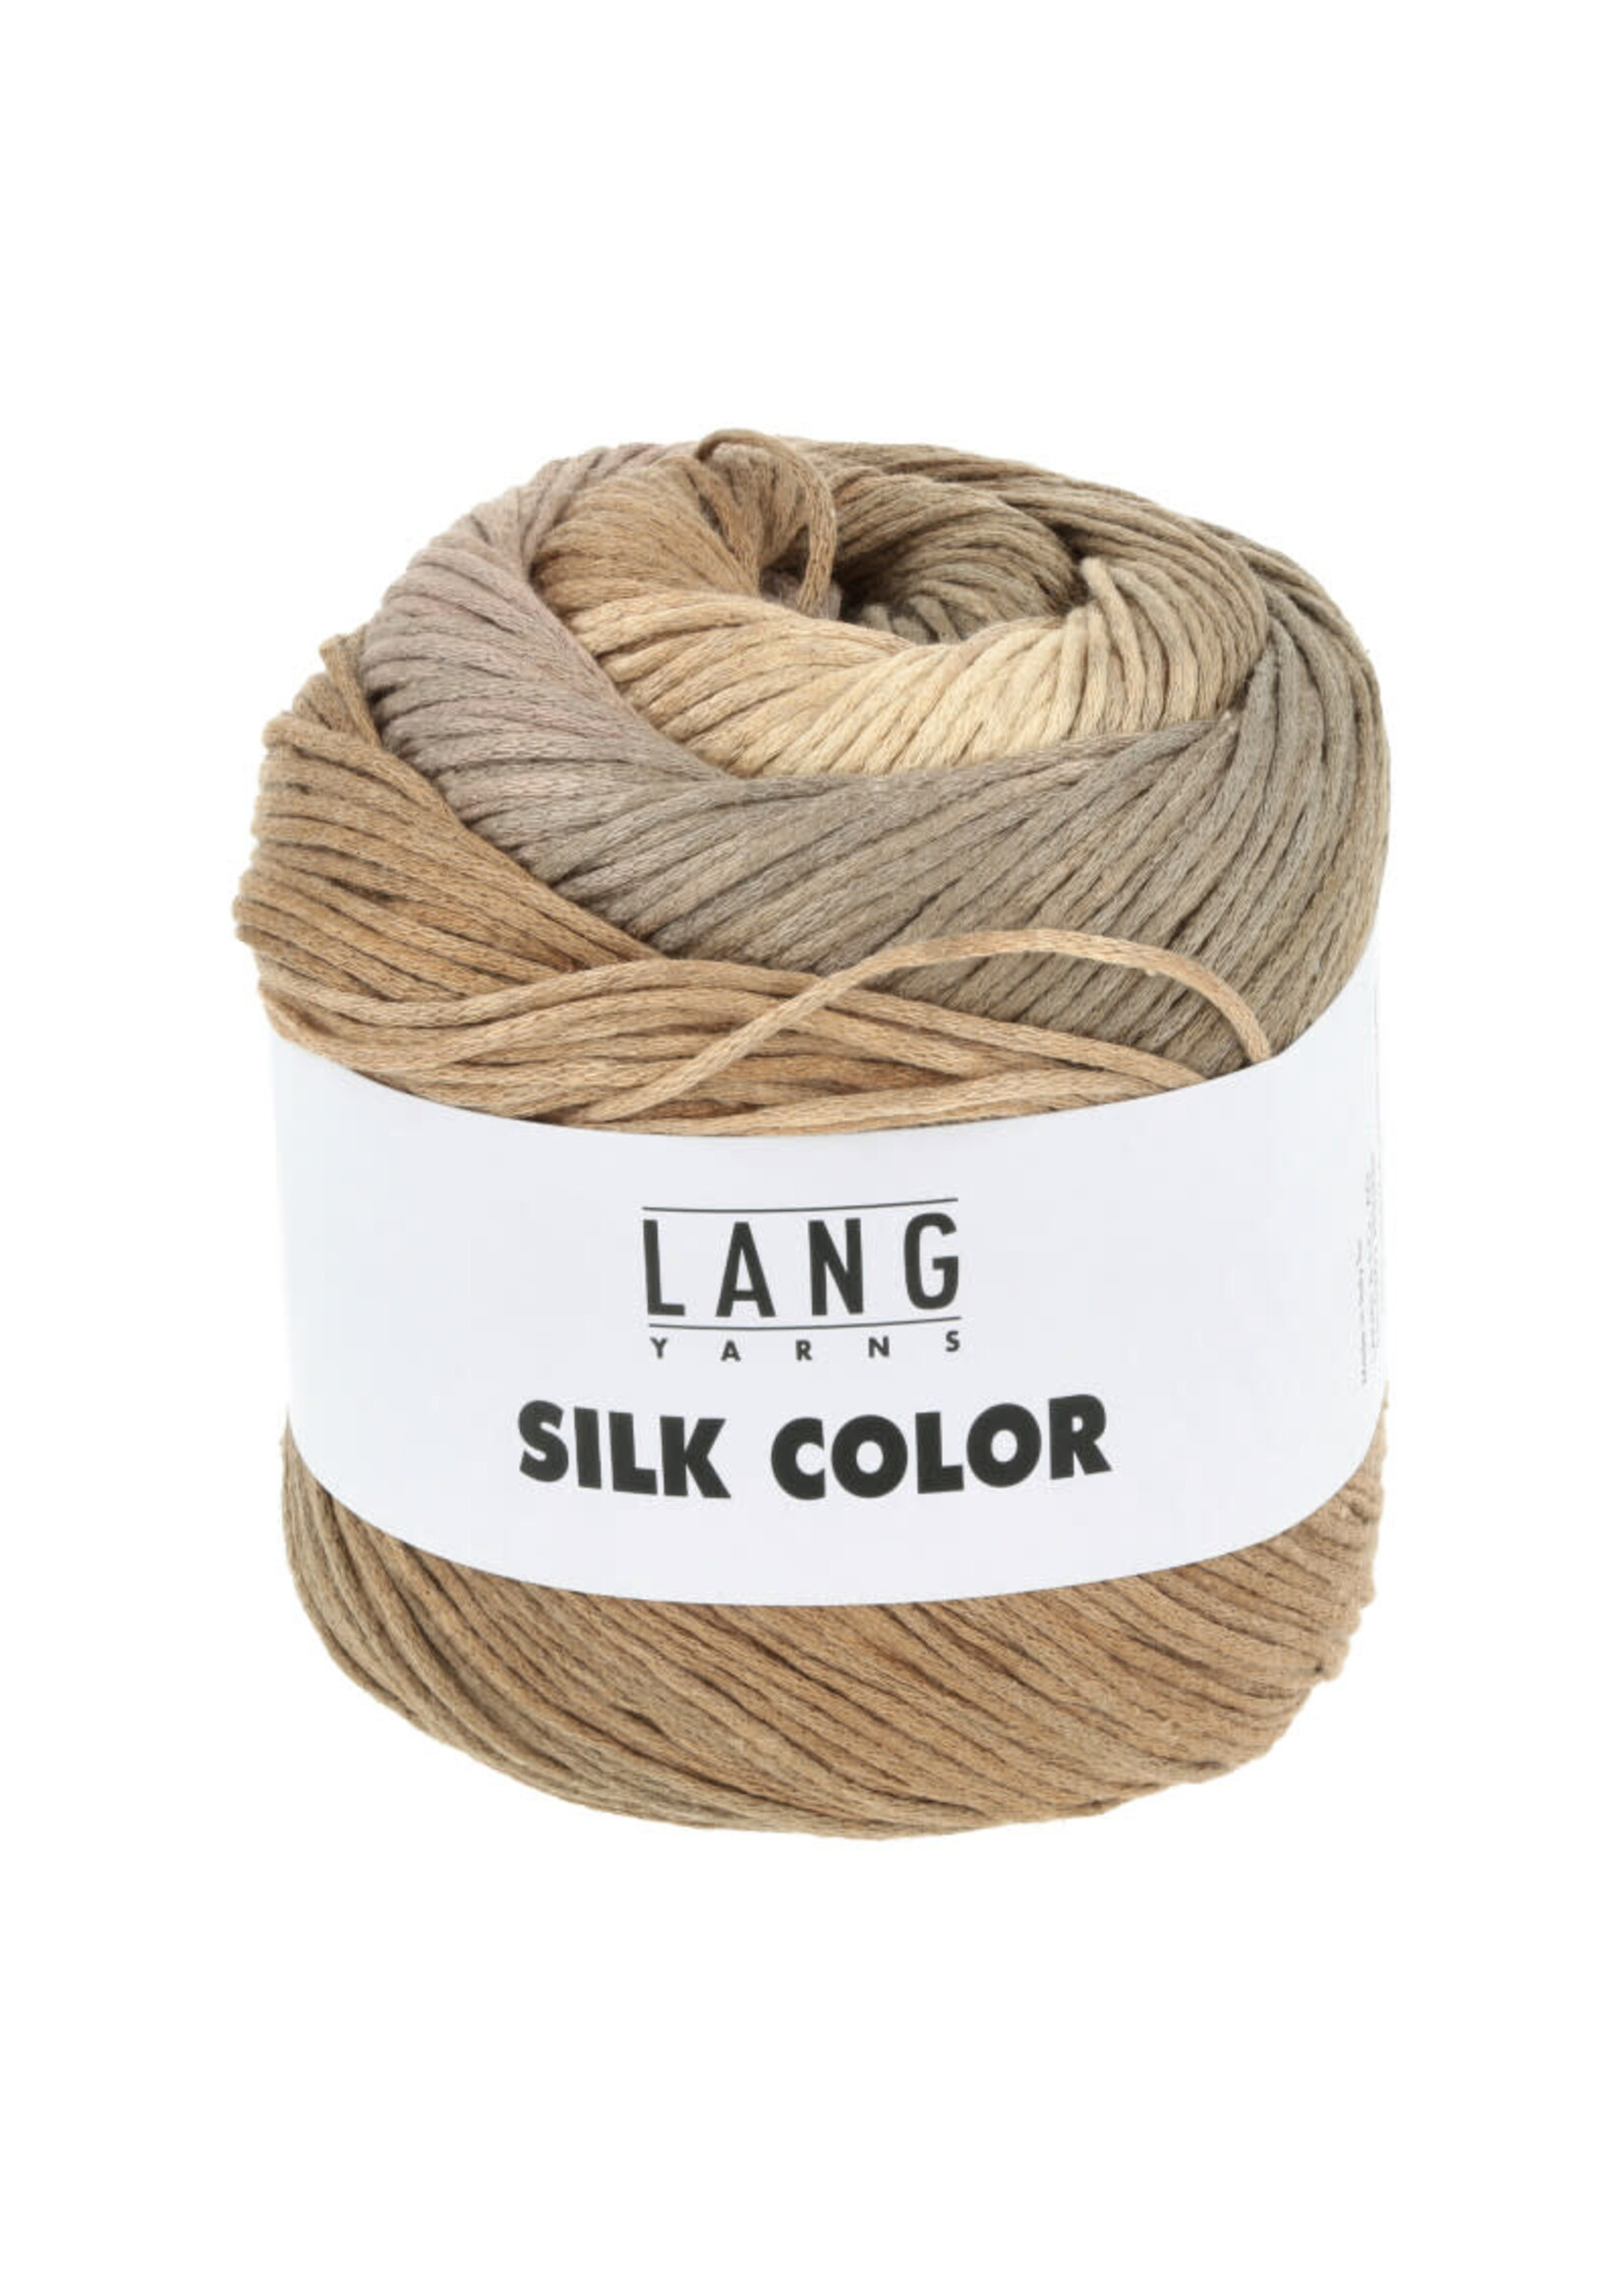 LangYarns Silk Color - 0008 Beige/kaneel/curry